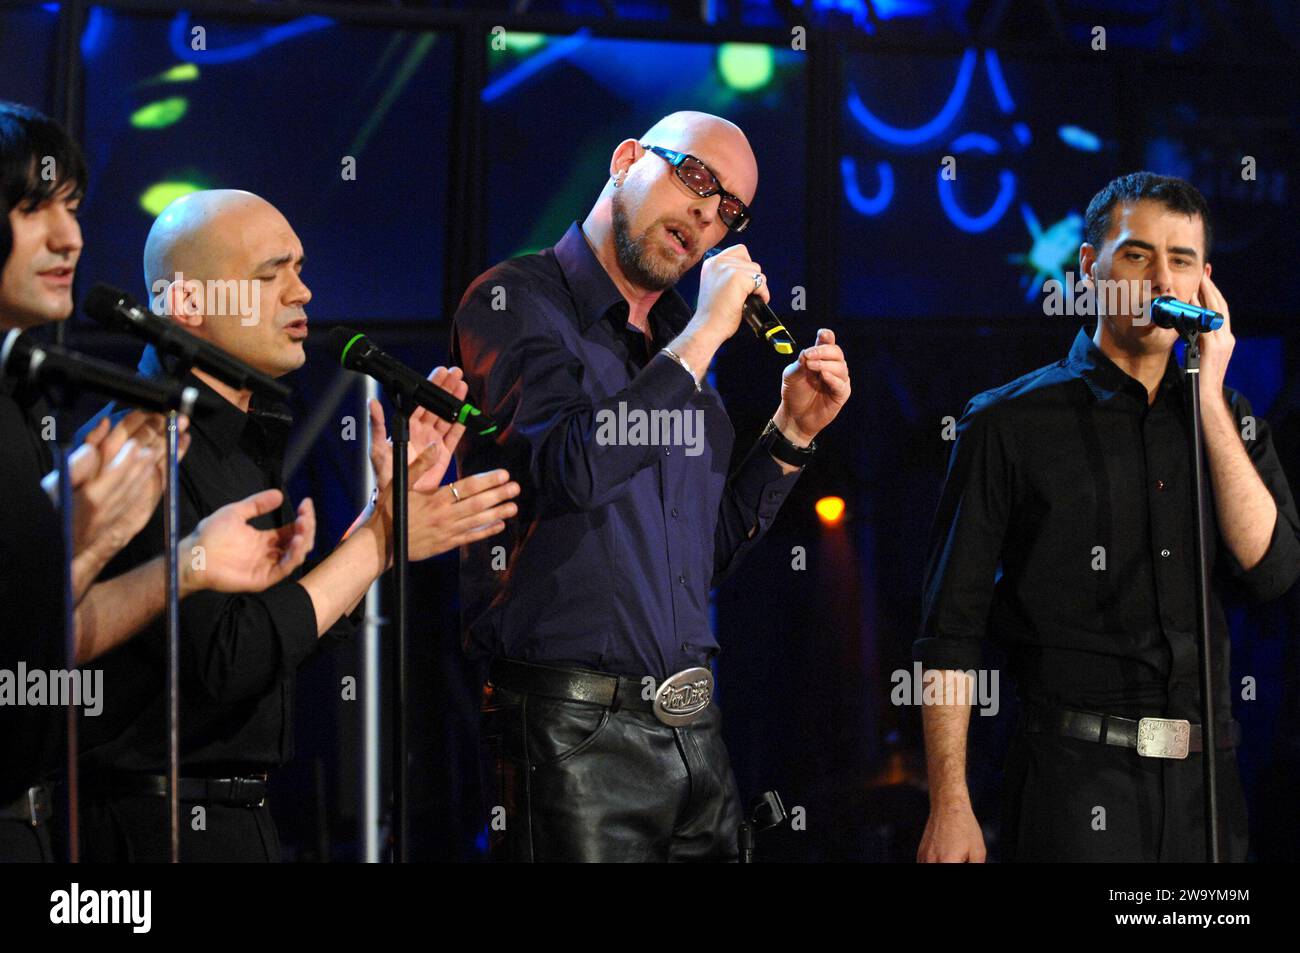 Milano Italia 2008-03-13: Mario Biondi e il gruppo musicale Neri per caso ,cantanti italiani, durante il concerto dal vivo allo Scalo 76 Foto Stock